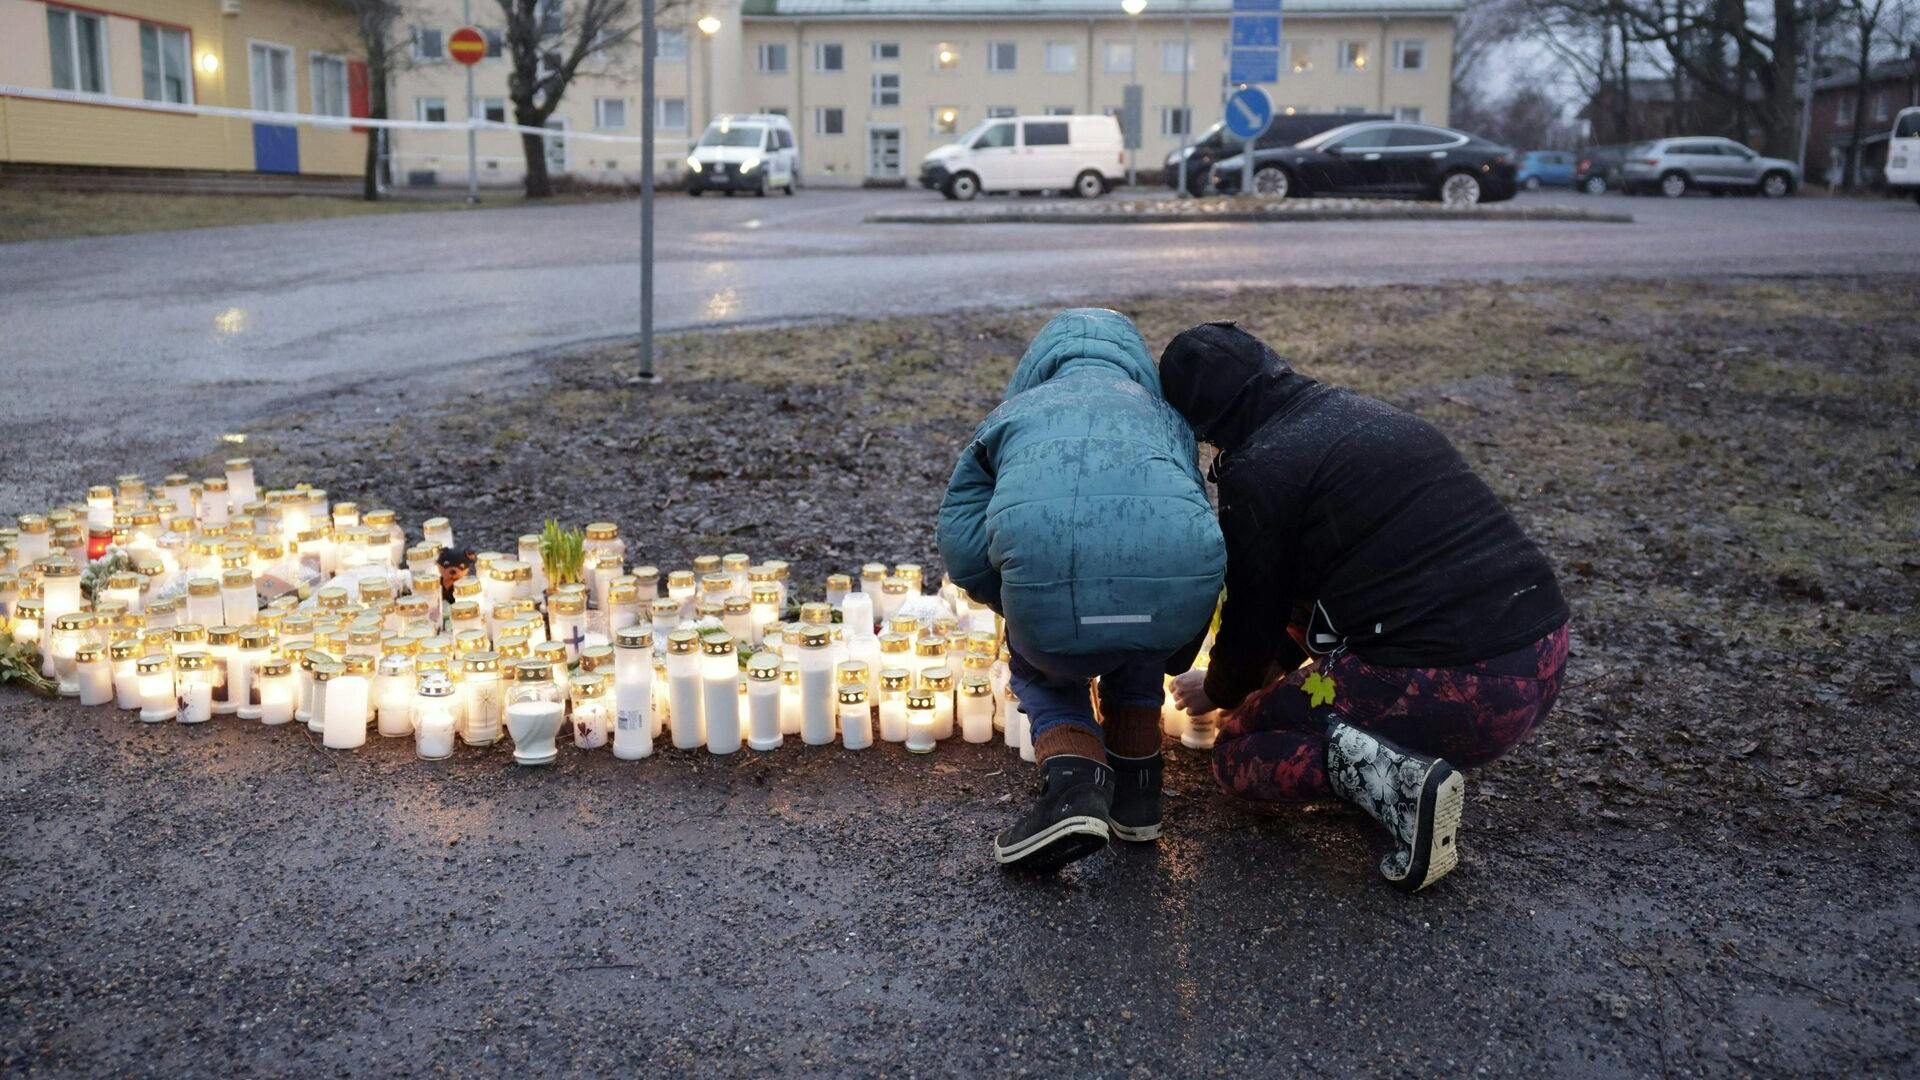 Torsdag bliver to af de børn, som blev skudt ved et skoleskyderi i Finland, fortsat behandlet på hospitalet. Deres skader beskrives som livstruende.